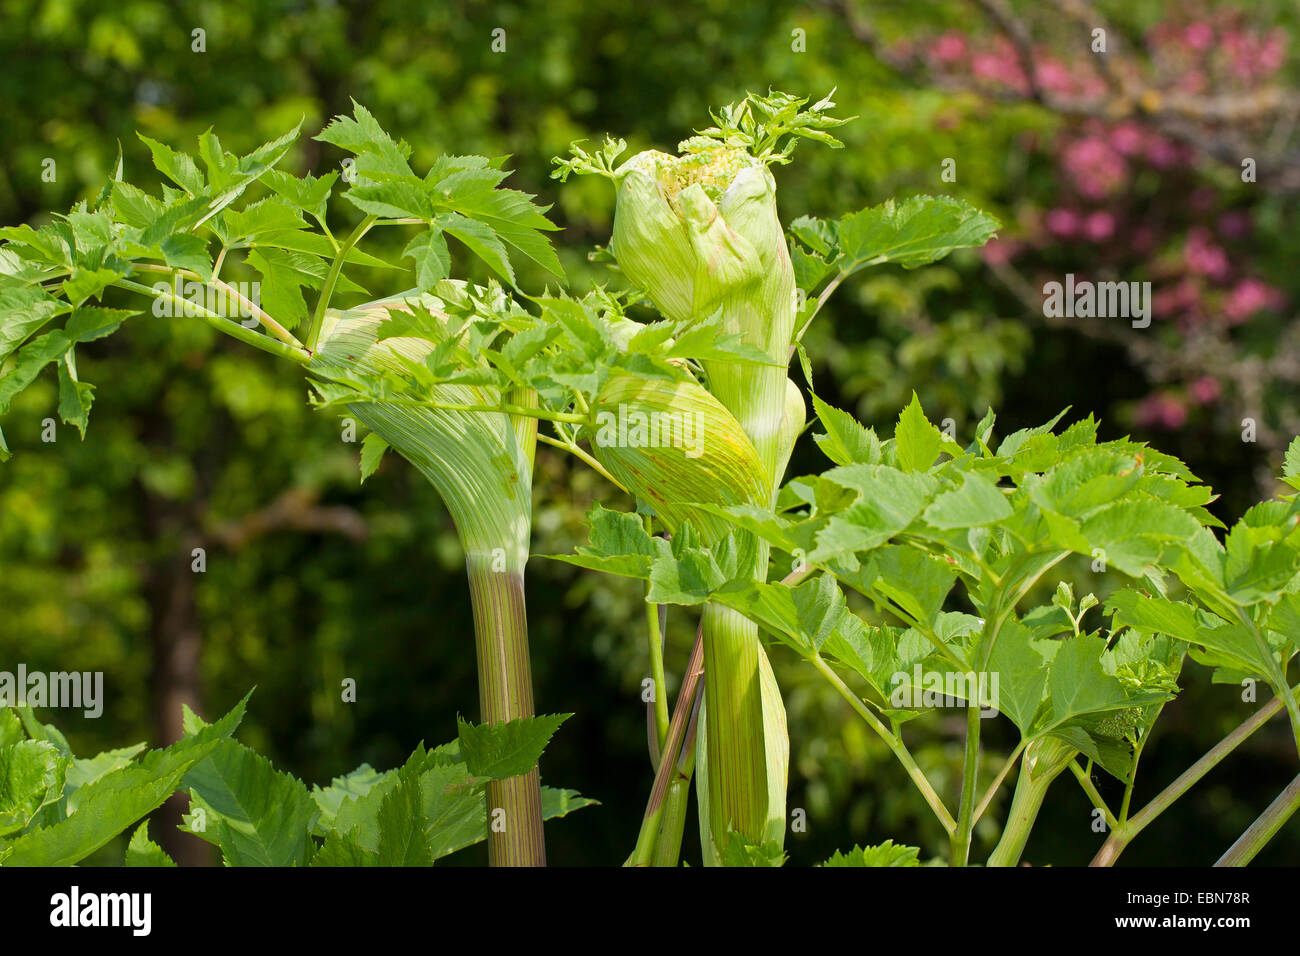 L'Angélique (Angelica archangelica), pousse une gaine foliaire, Allemagne Banque D'Images